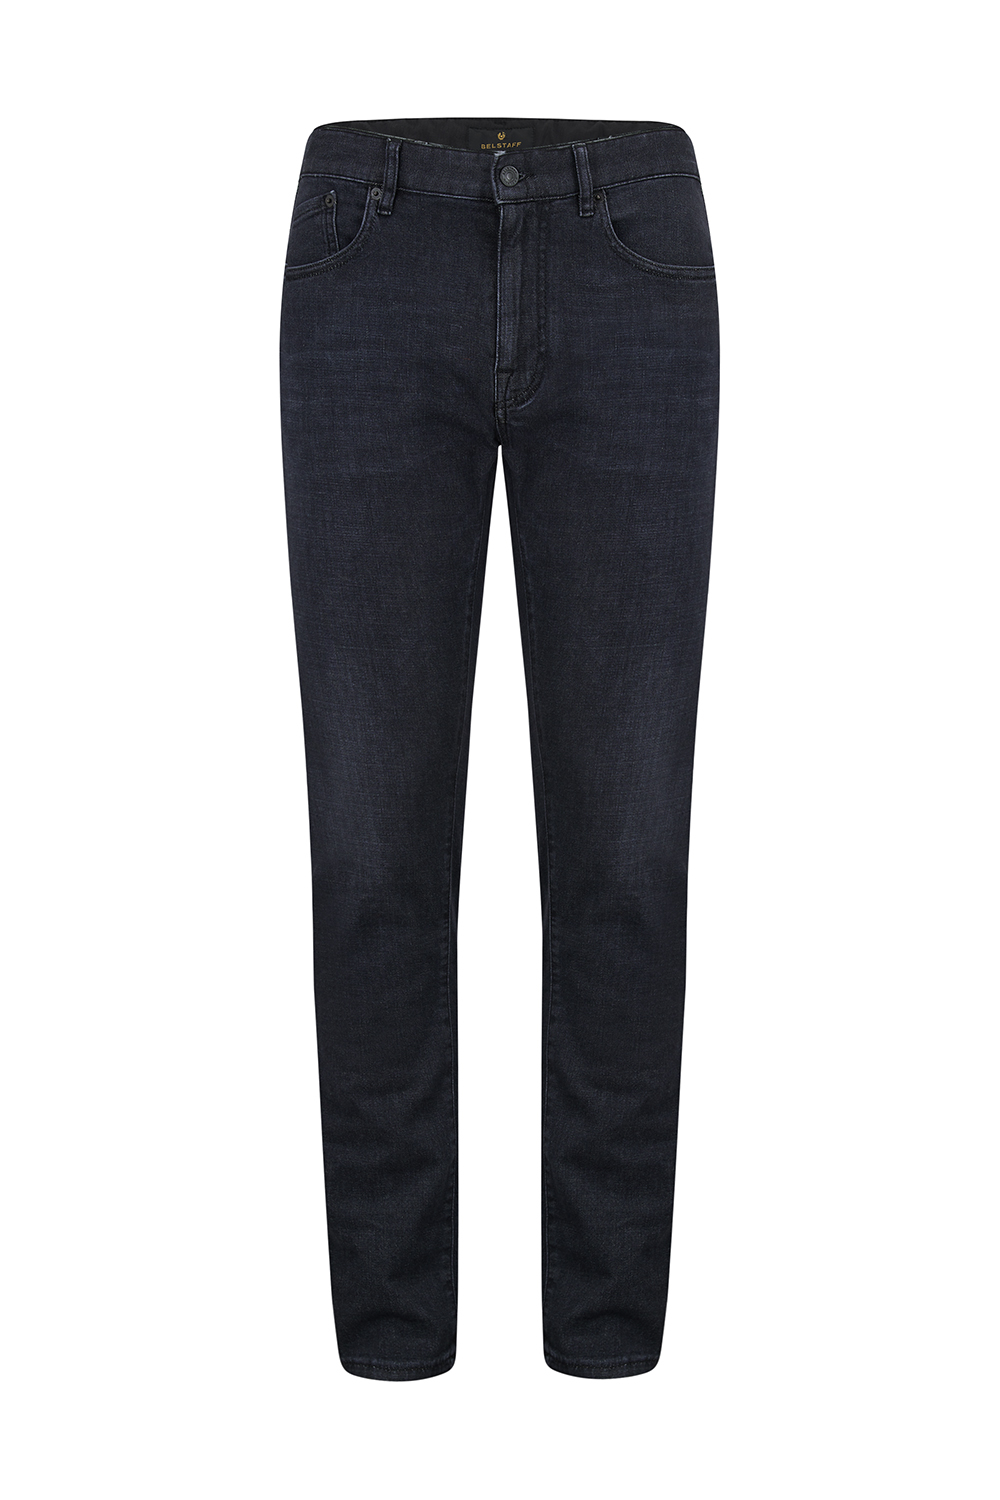 Belstaff Men's Longton Slim Jeans Black - New S23 Collection | Linea ...